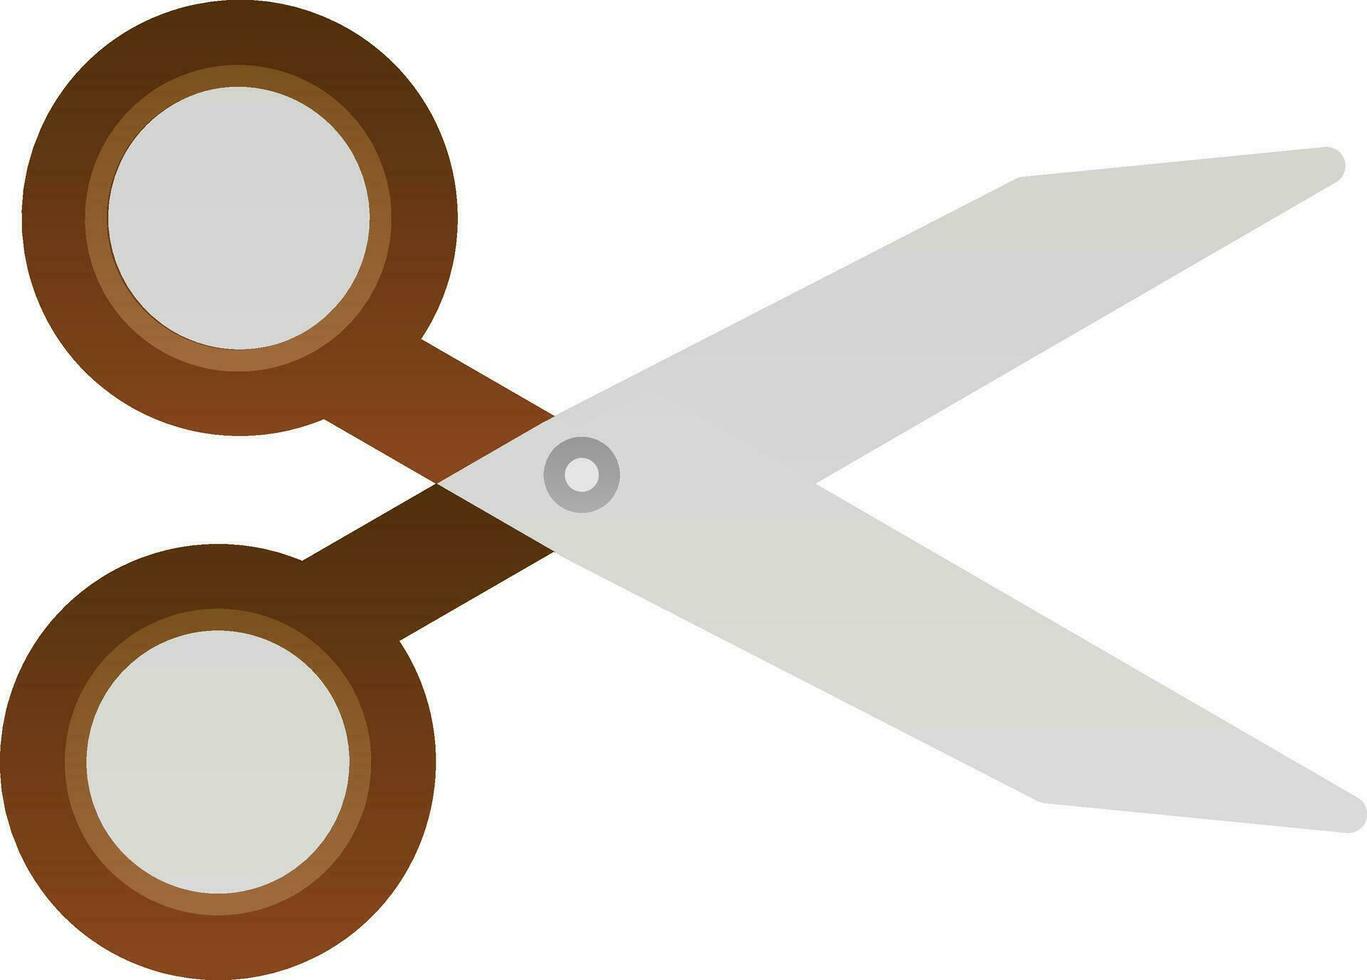 Scissor Vector Icon Design